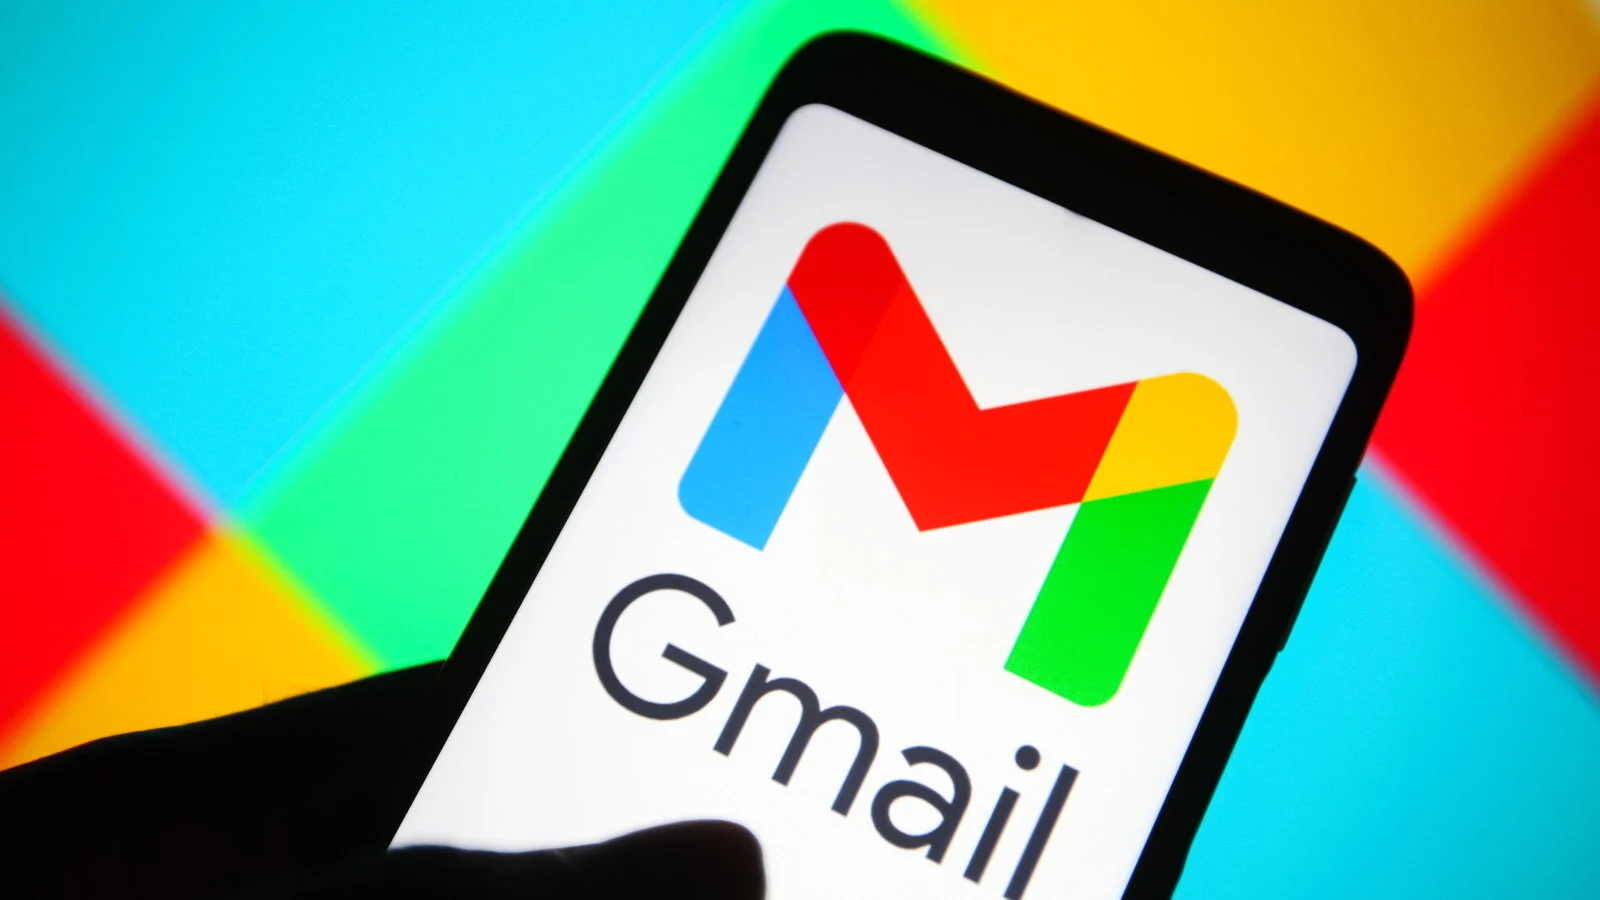 Mielőtt a Gmail törölné az összes leveledet, ezt tedd meg: Pillanatok alatt hatalmas tárhely szabadul fel